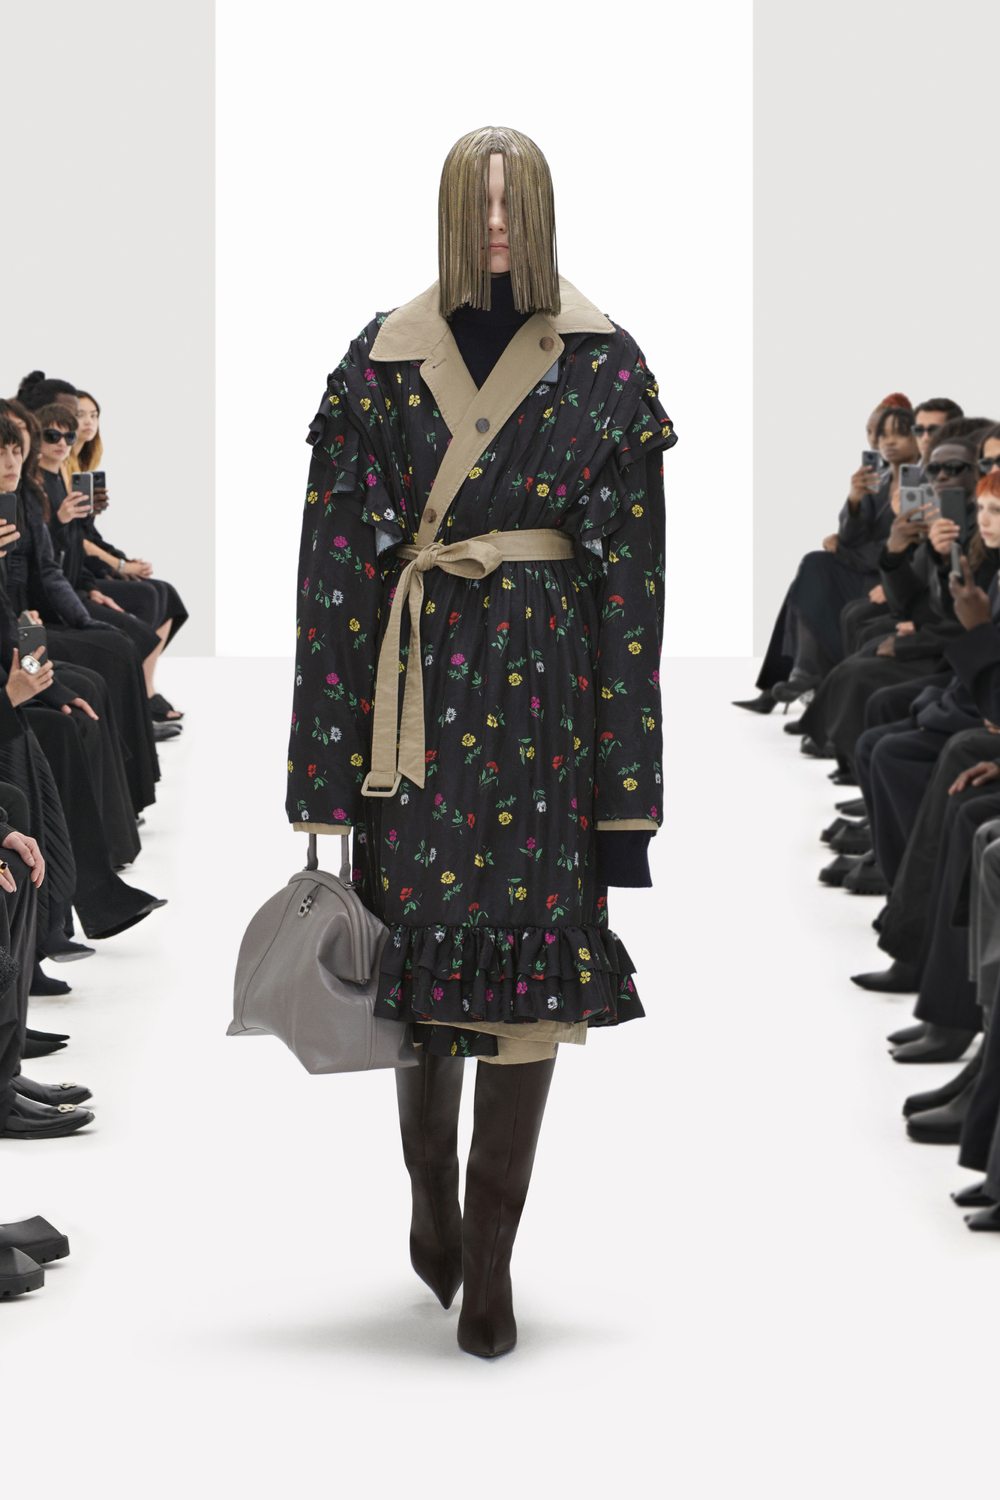  La collaboration inédite entre Gucci et Balenciaga défilé printemps 2022 intitulée “The Hacker Project”